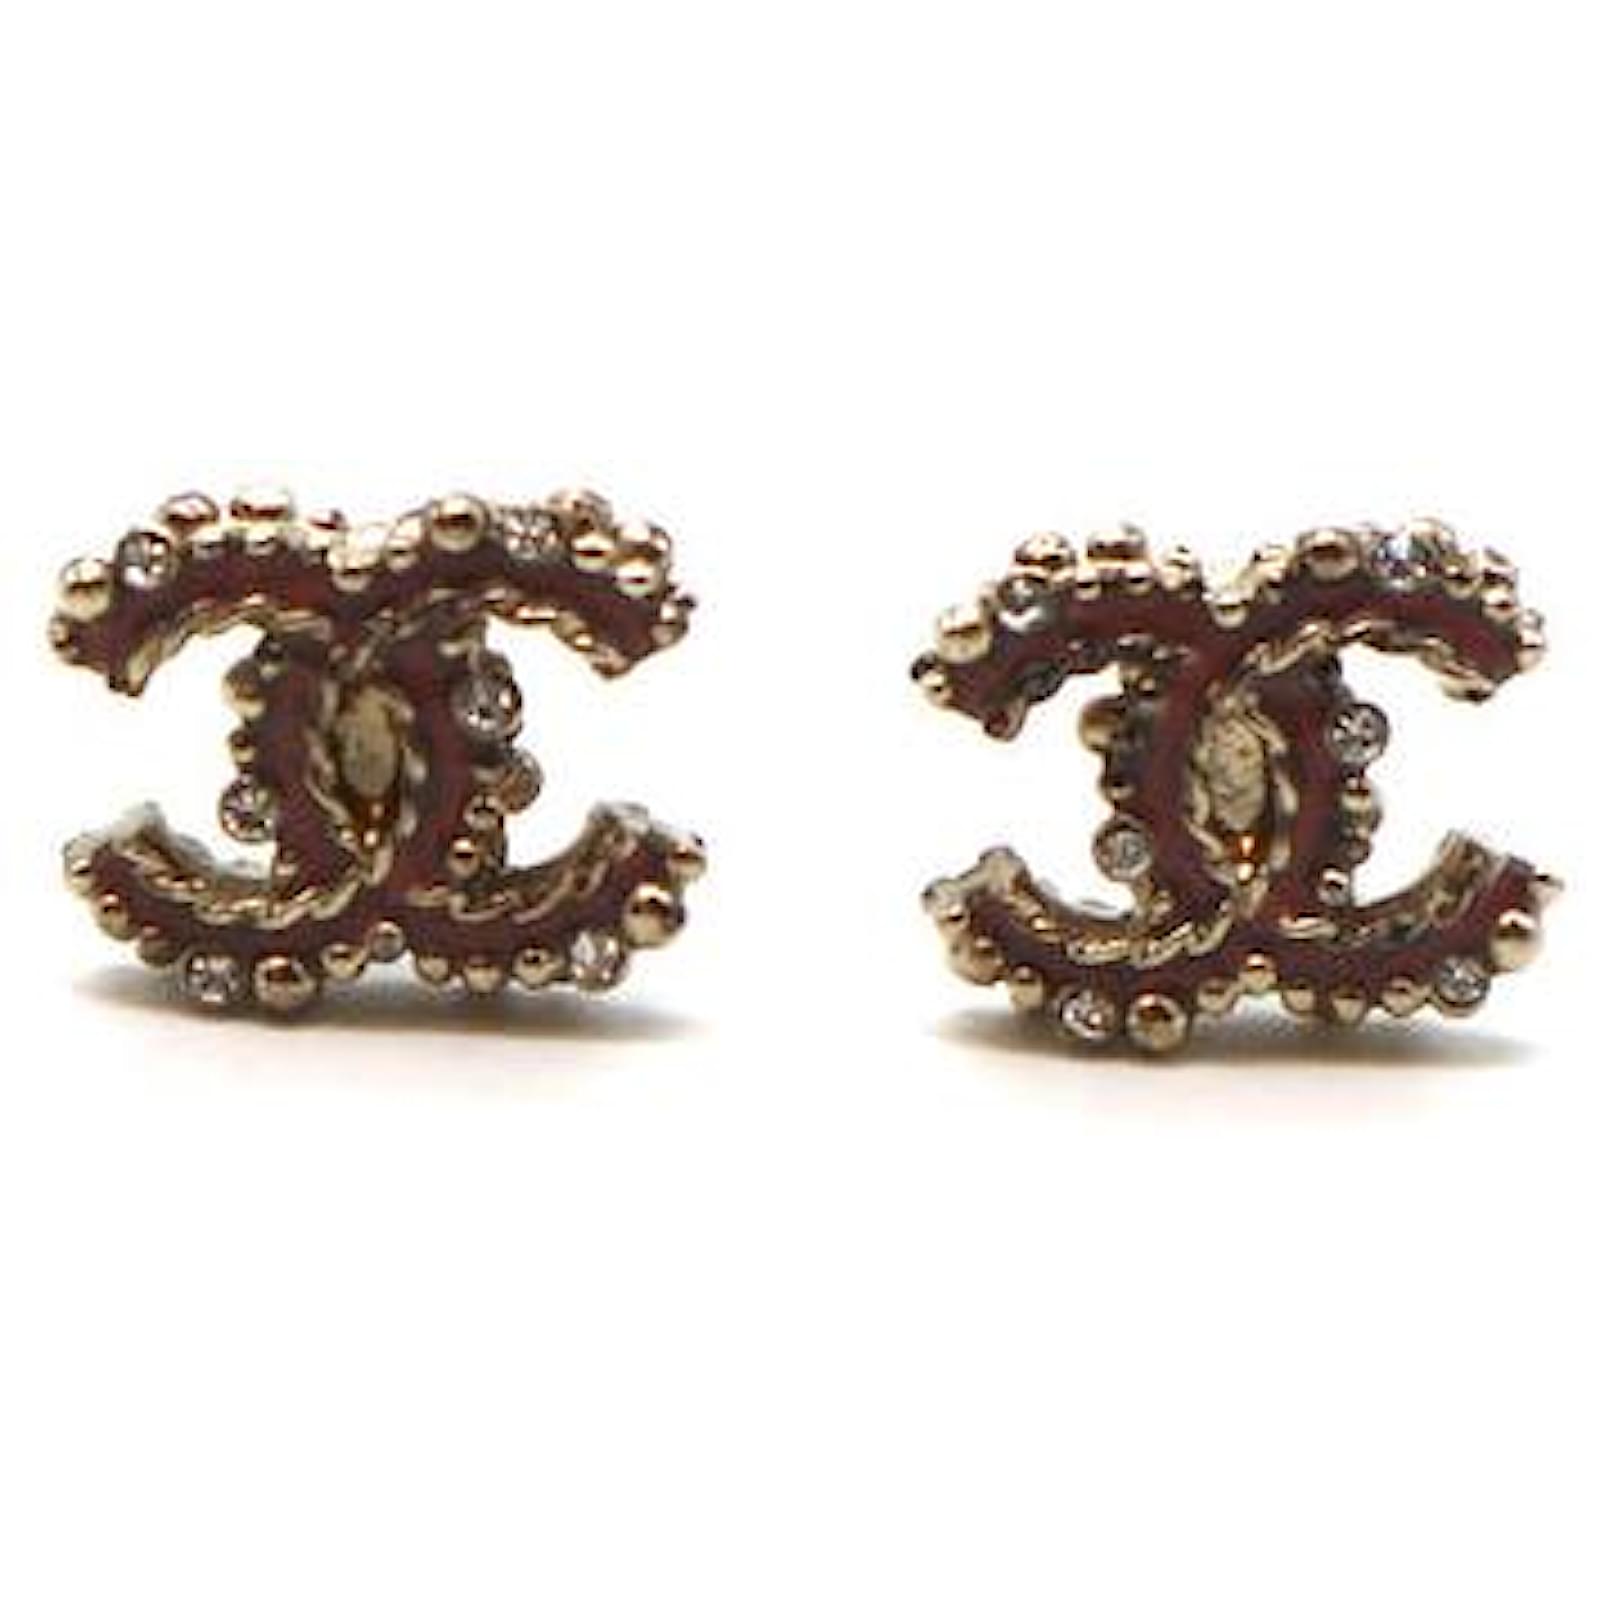 Chanel Gold Enamel CC Stud Earrings